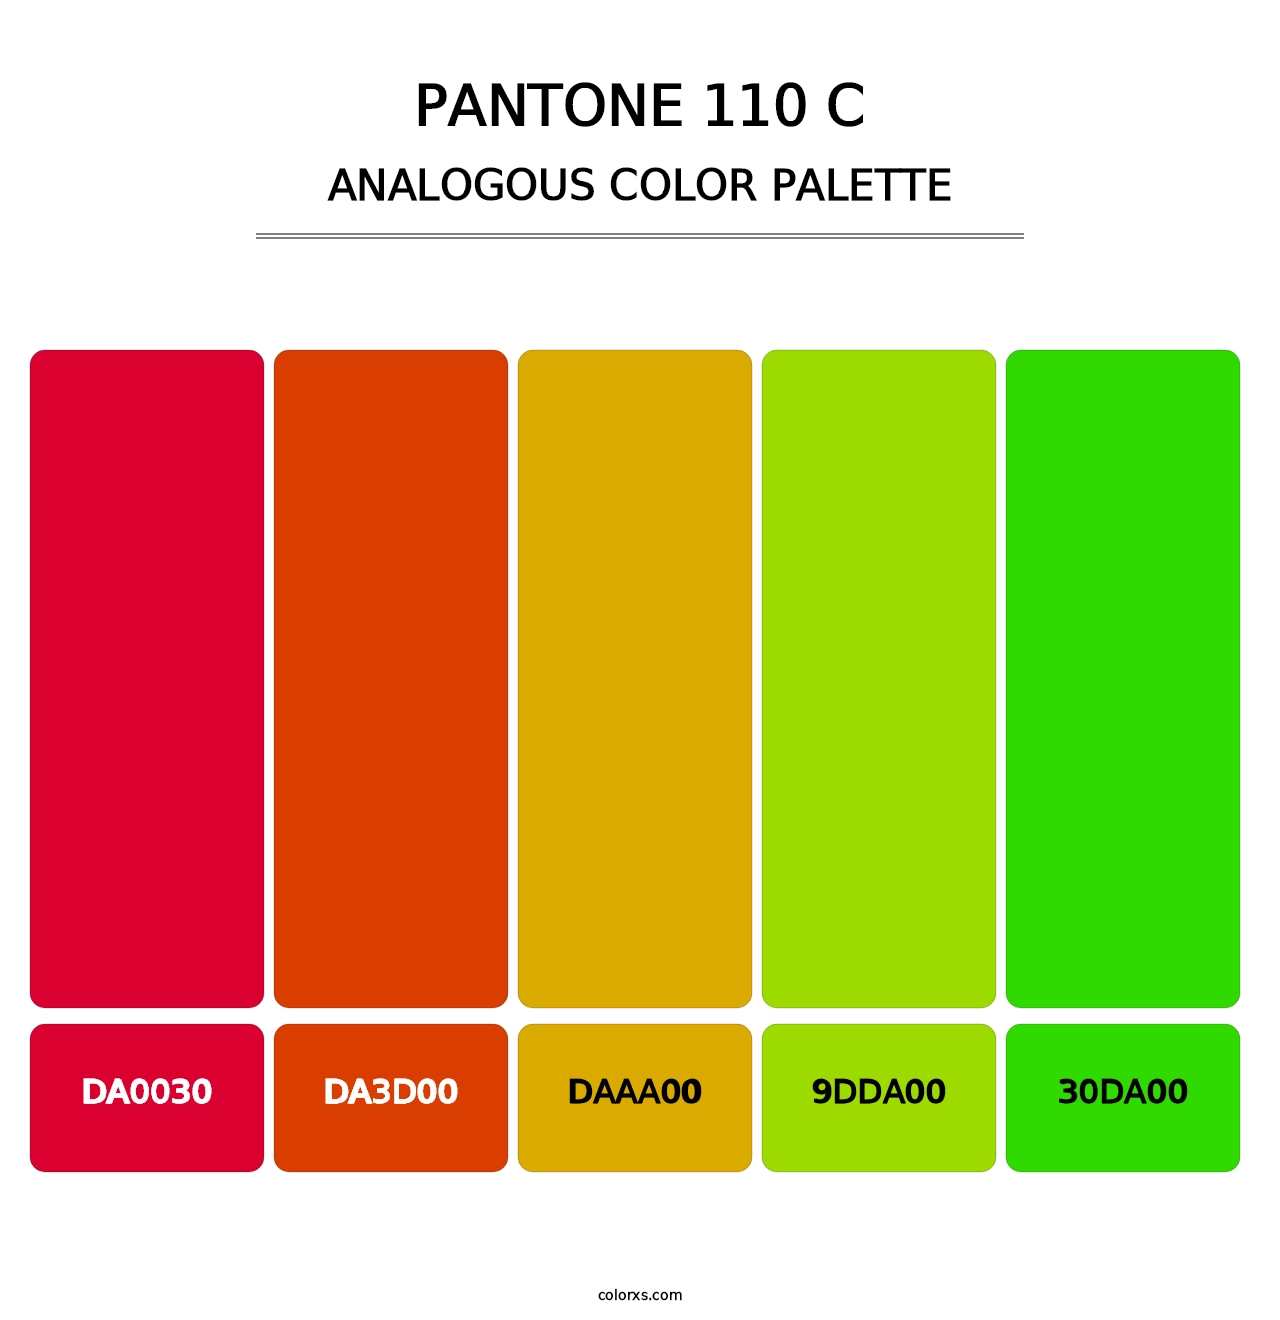 PANTONE 110 C - Analogous Color Palette